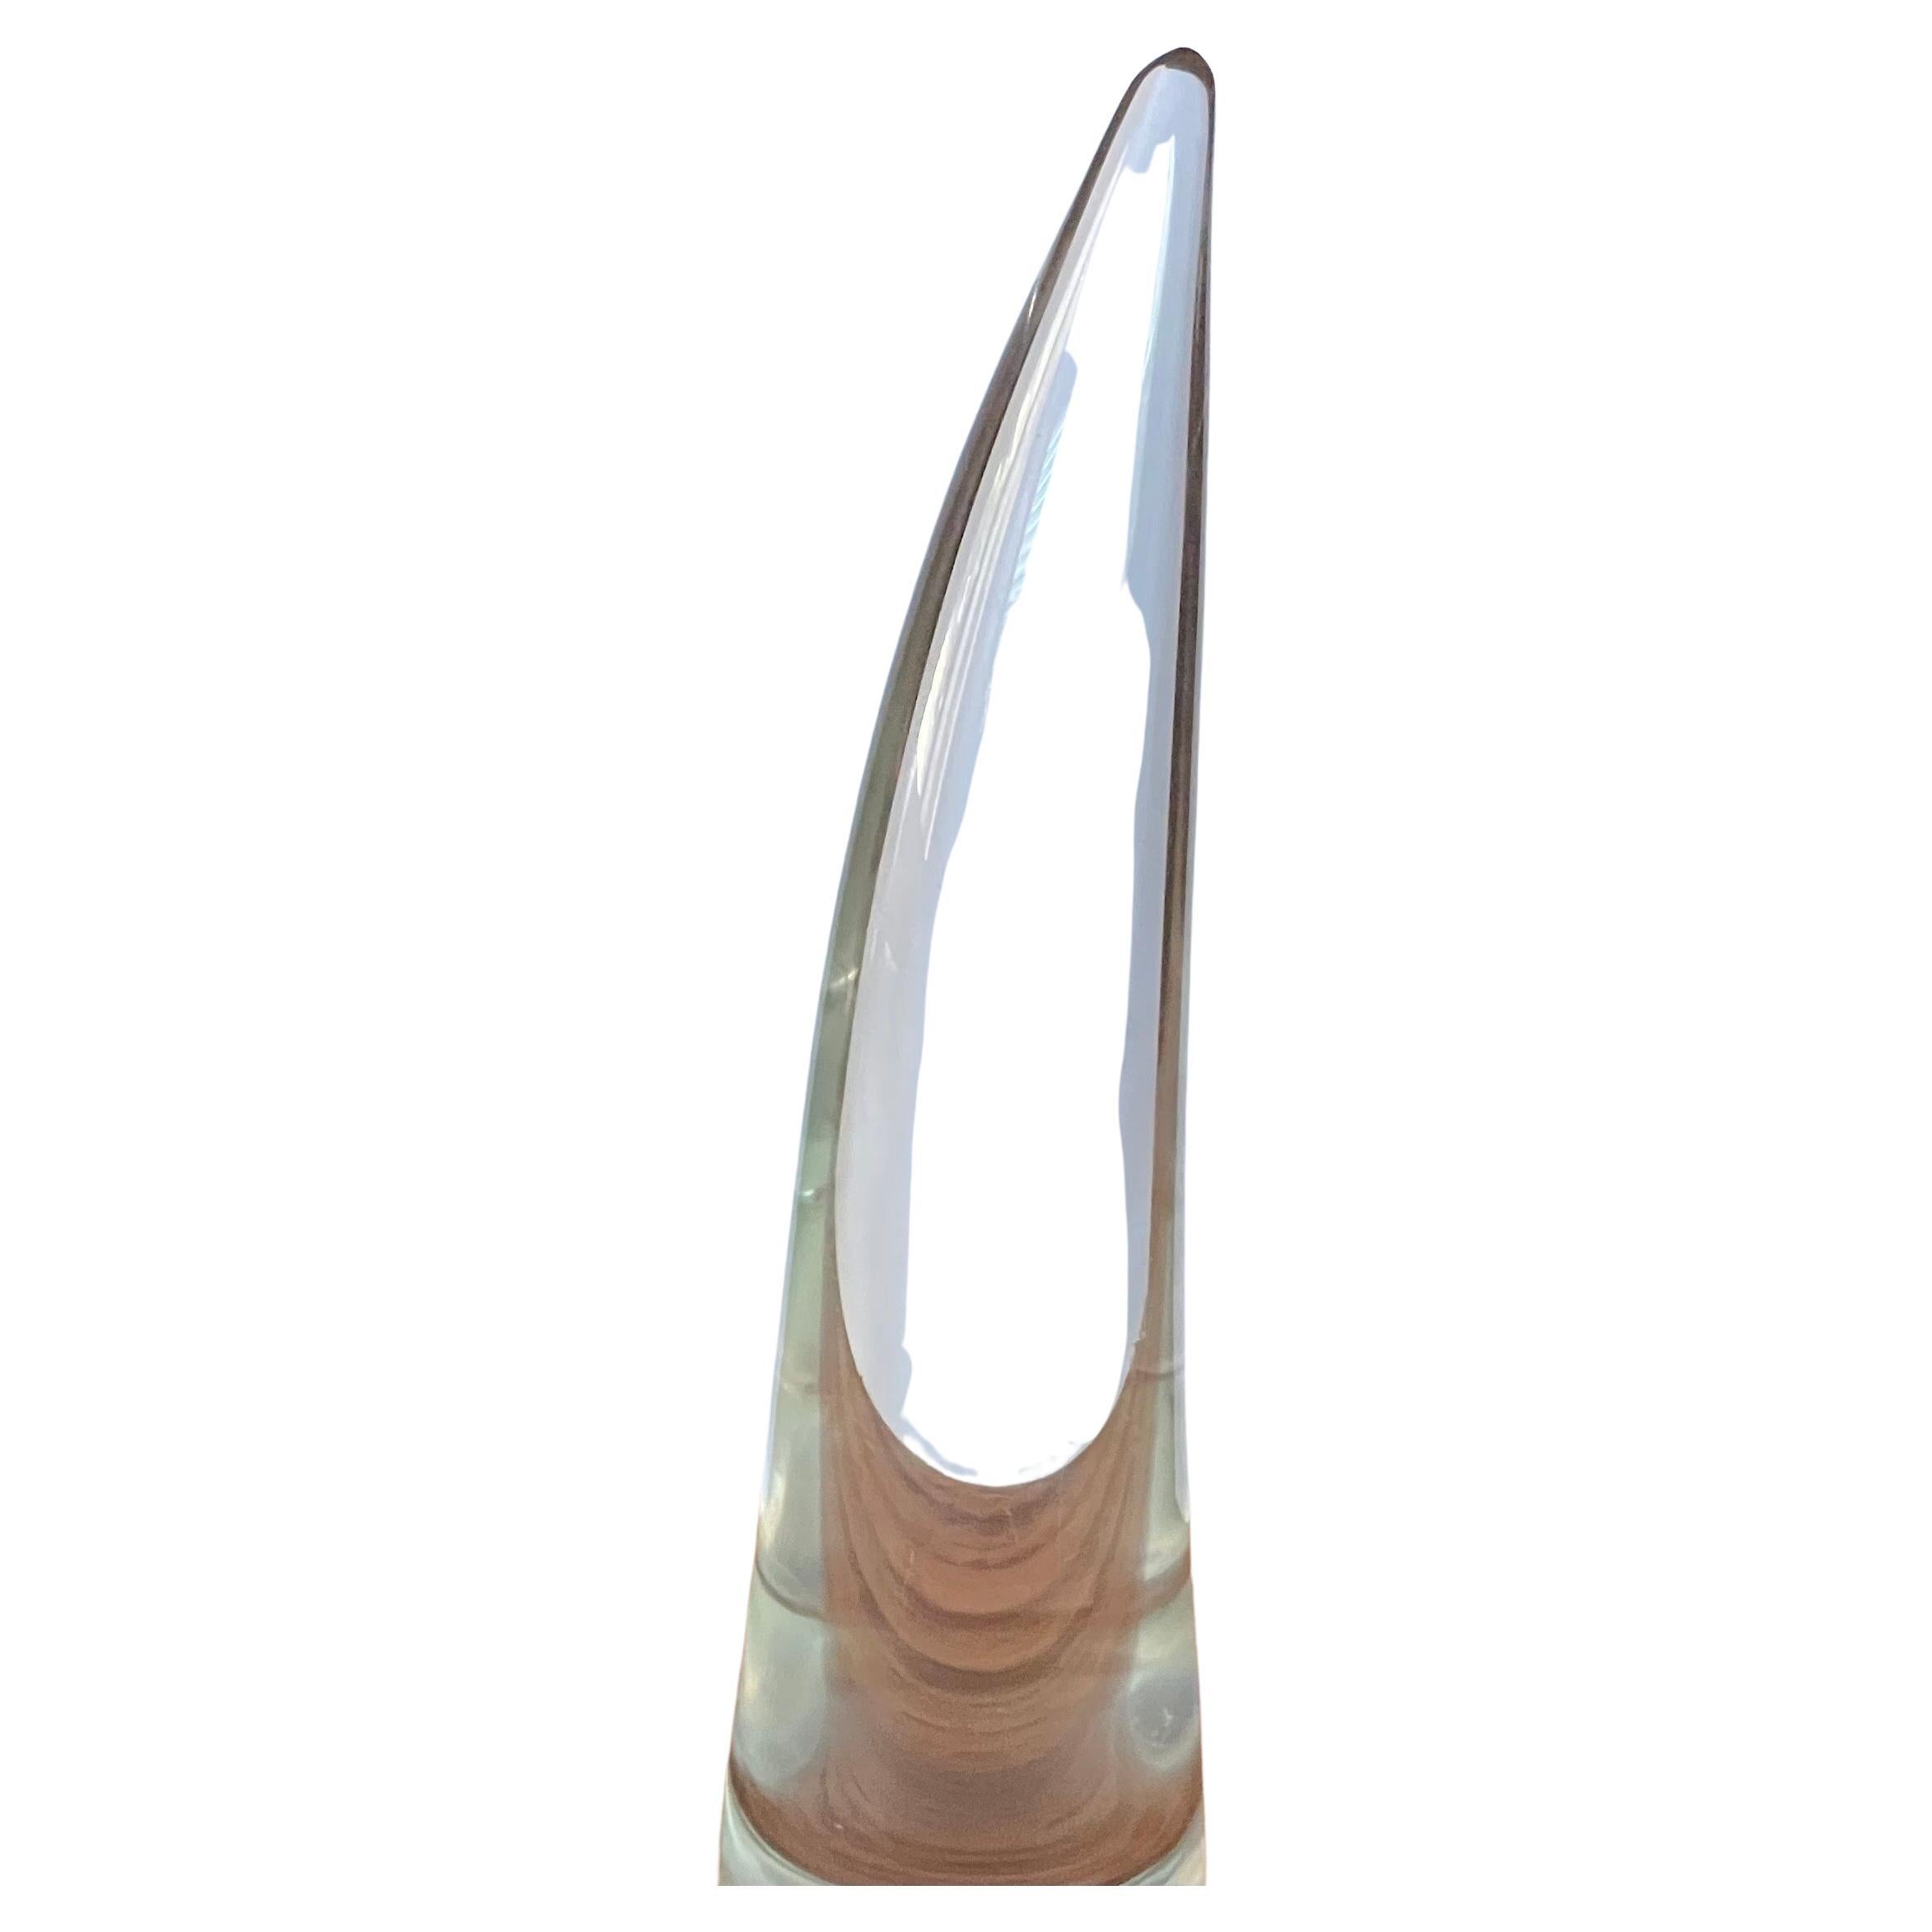 Wunderschönes großes Horn aus Kunstglas von Licio Zanetti für die Murano Glass Studios, ca. 1970er Jahre. Das Horn misst 3 